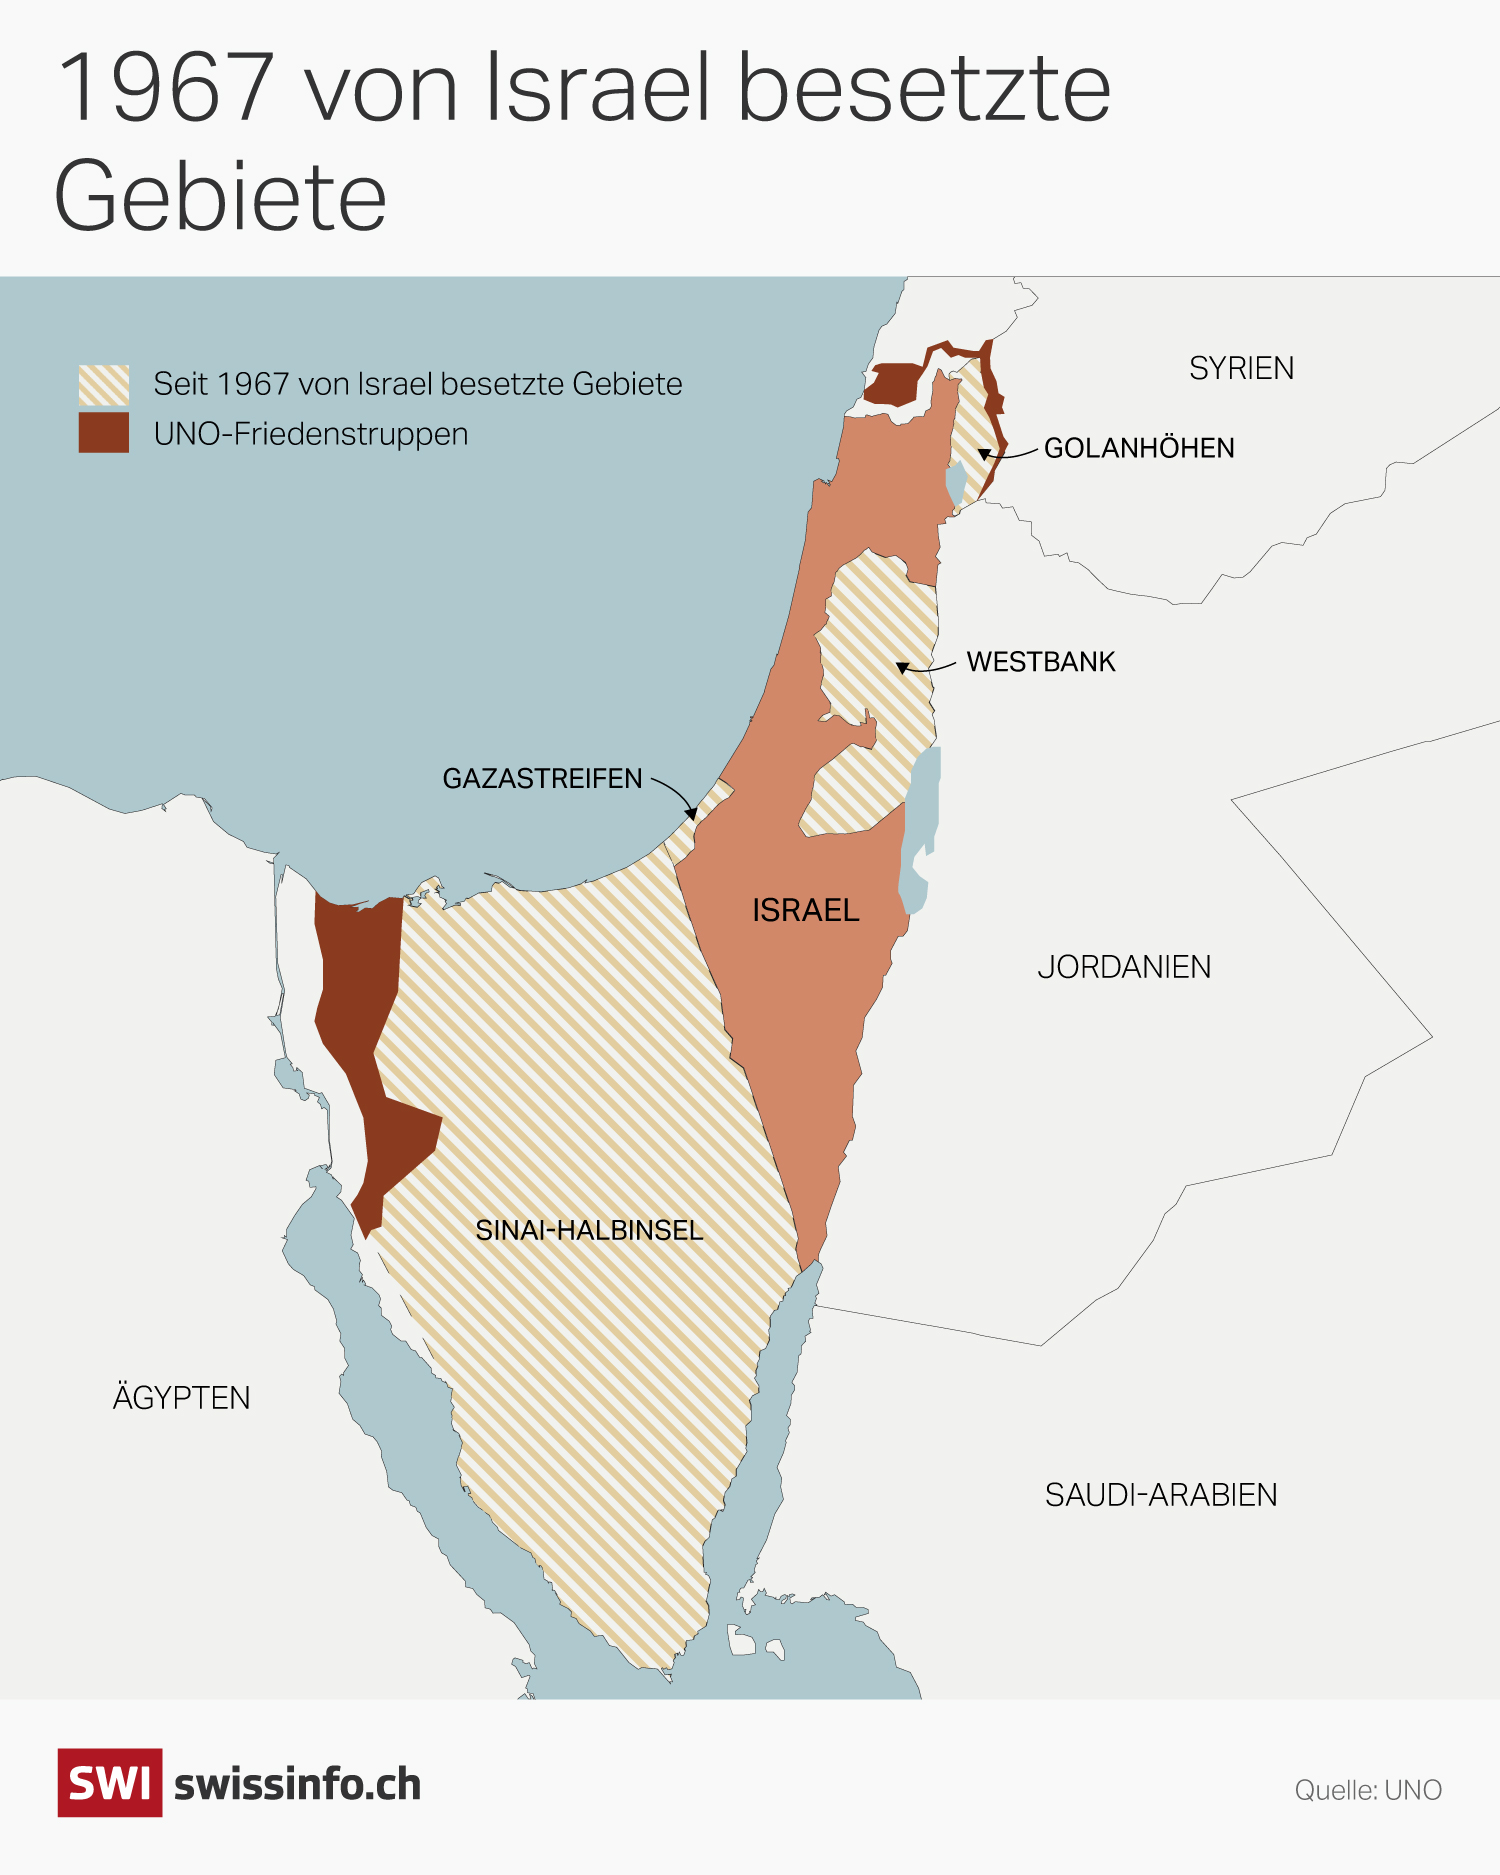 Grafik mit einer Karte von Israel mit den eingezeichneten besetzten Gebieten